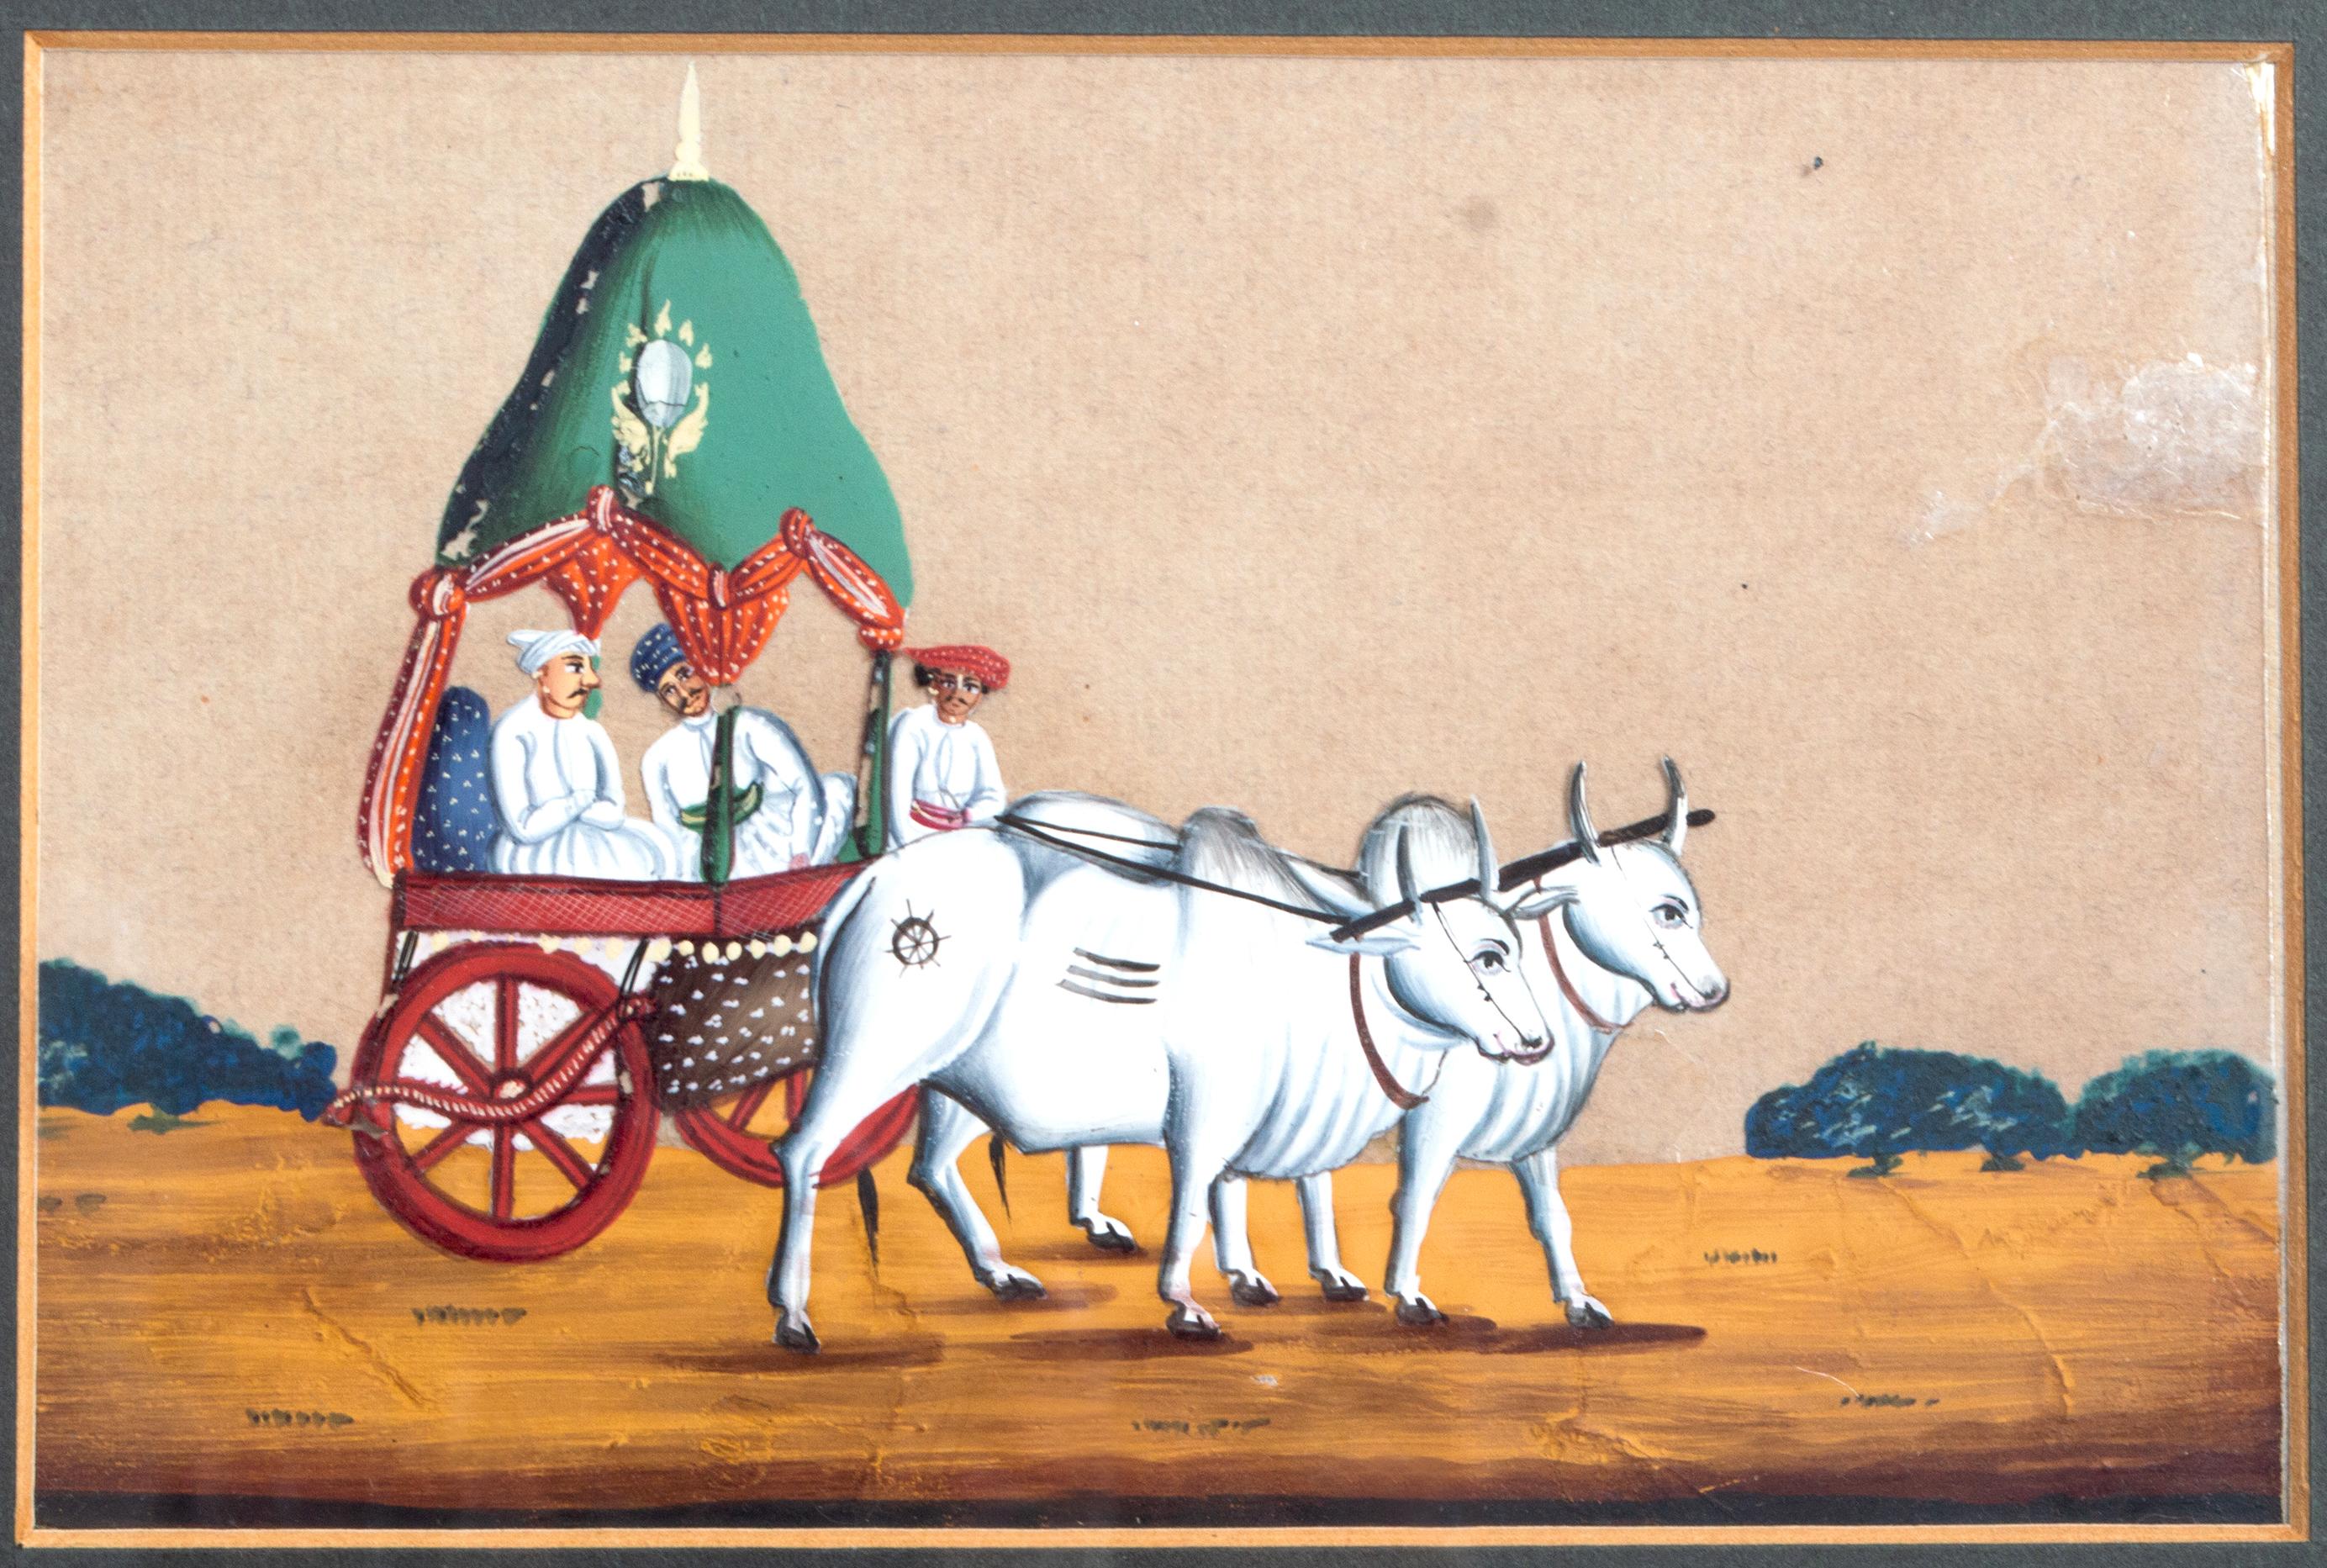 Paire de peintures indiennes anciennes du 19ème siècle, en mica, datant de 1830.
Indian Company School

Une paire de peintures indiennes du 19ème siècle à la gouache sur mica.
Représentation du porteur d'eau et d'un char à bœufs Purdah avec deux